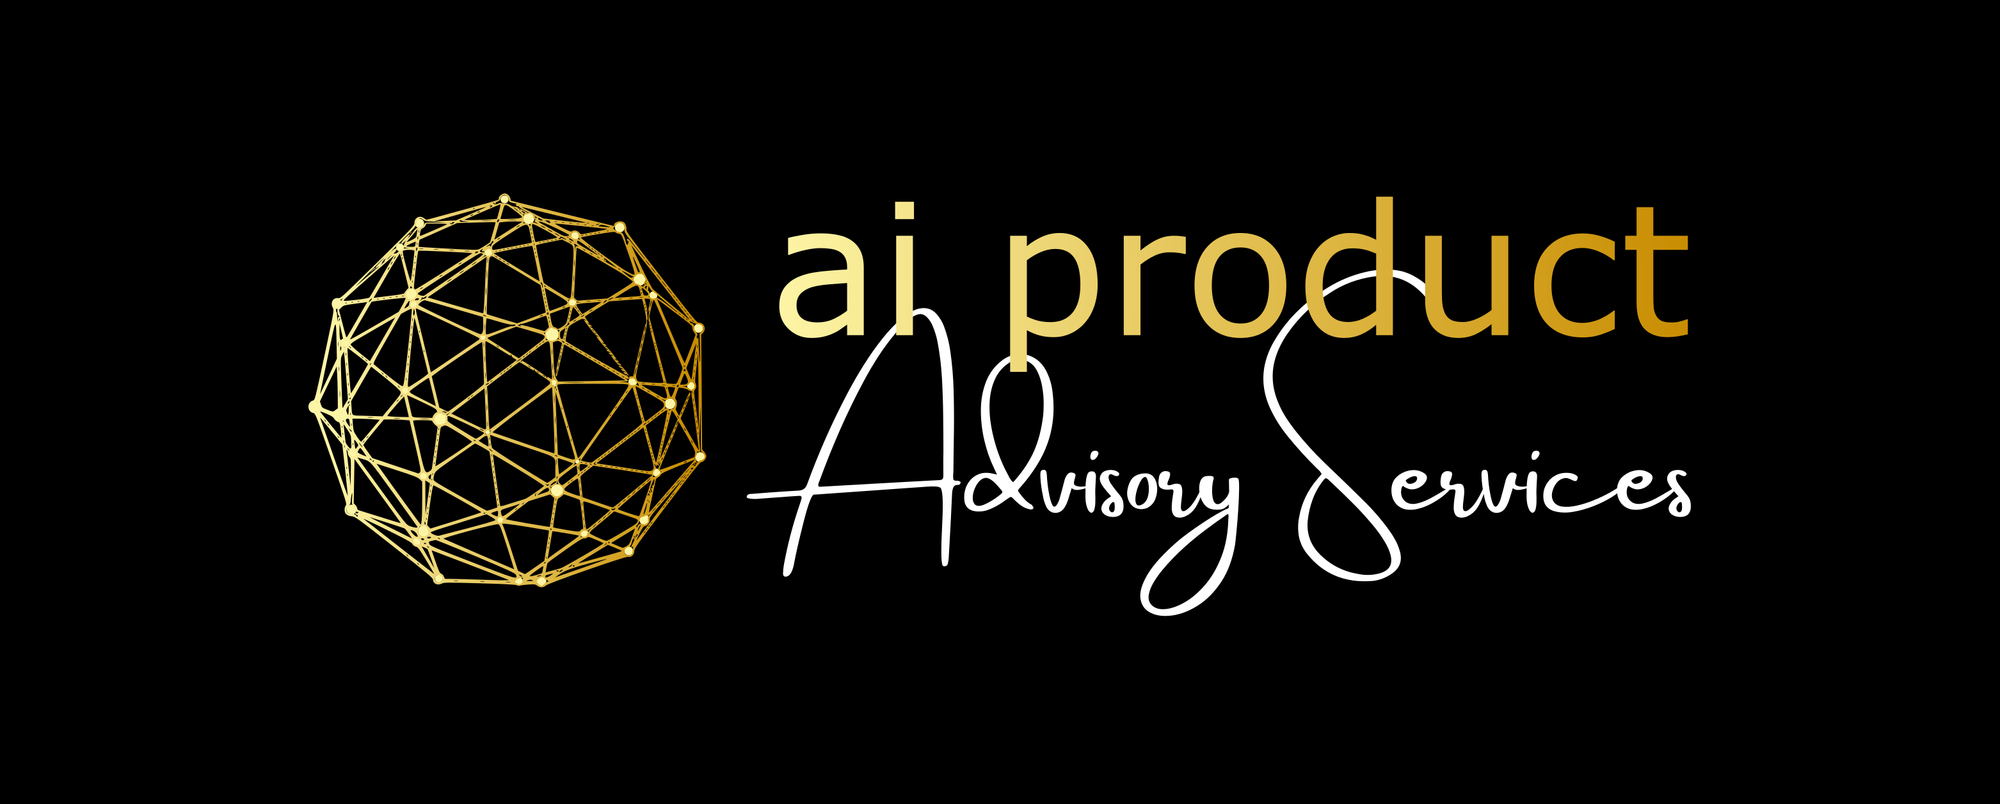 AI & Product Advisory Services